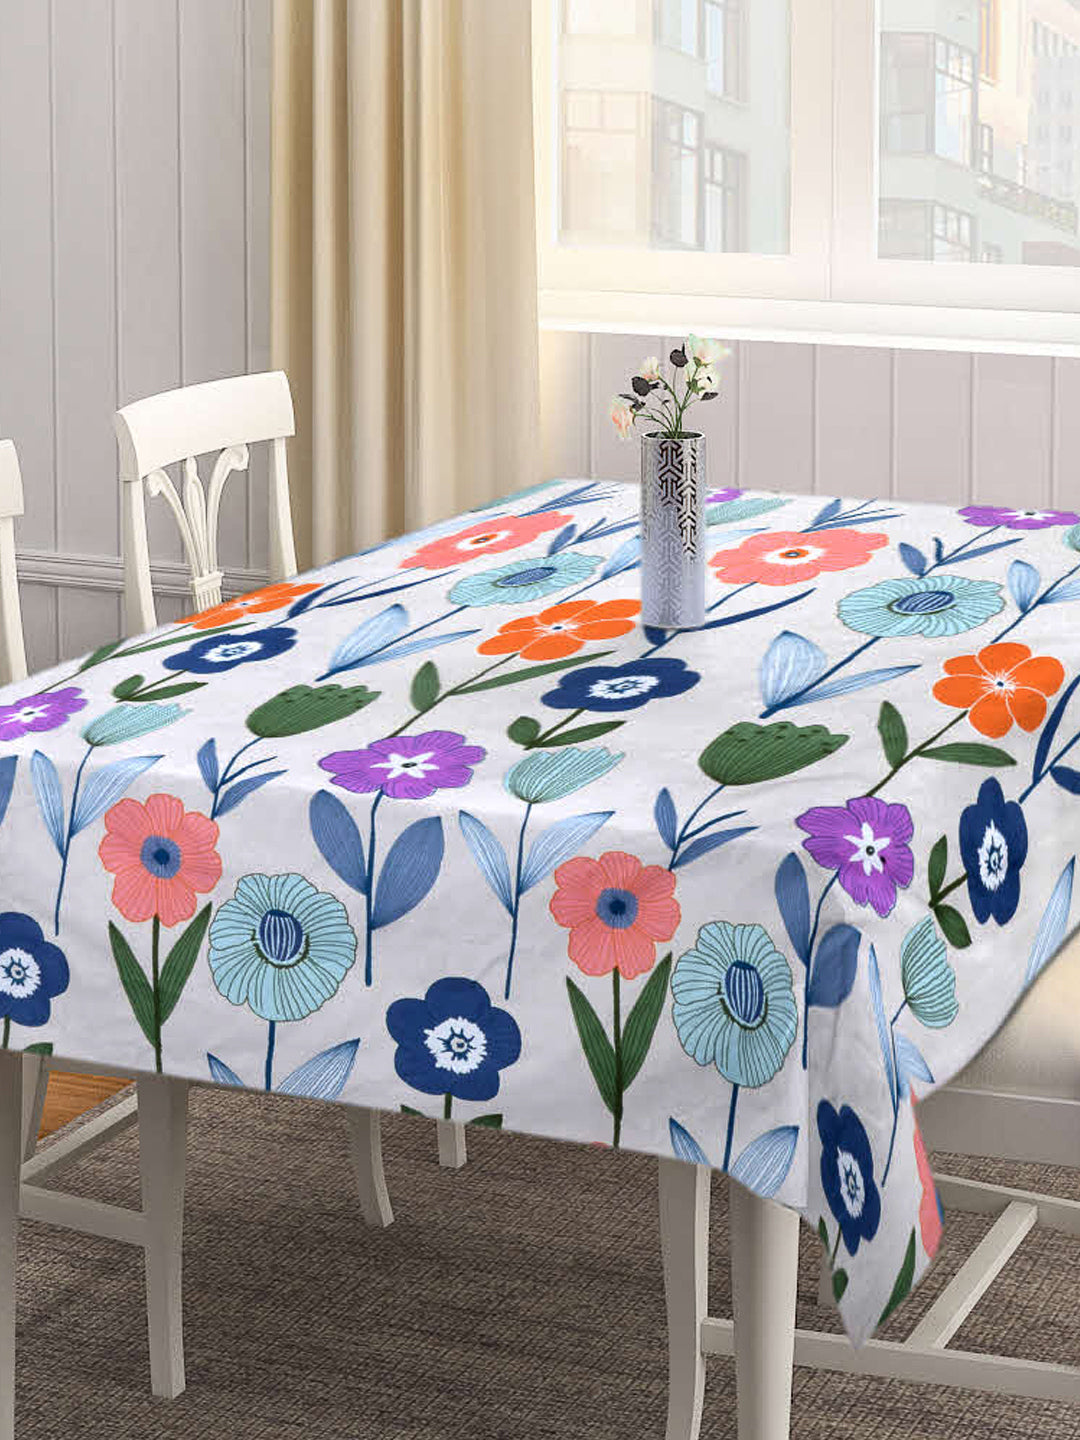 Arrabi Multi Floral Cotton Blend 8 SEATER Table Cover (215 X 150 cm)